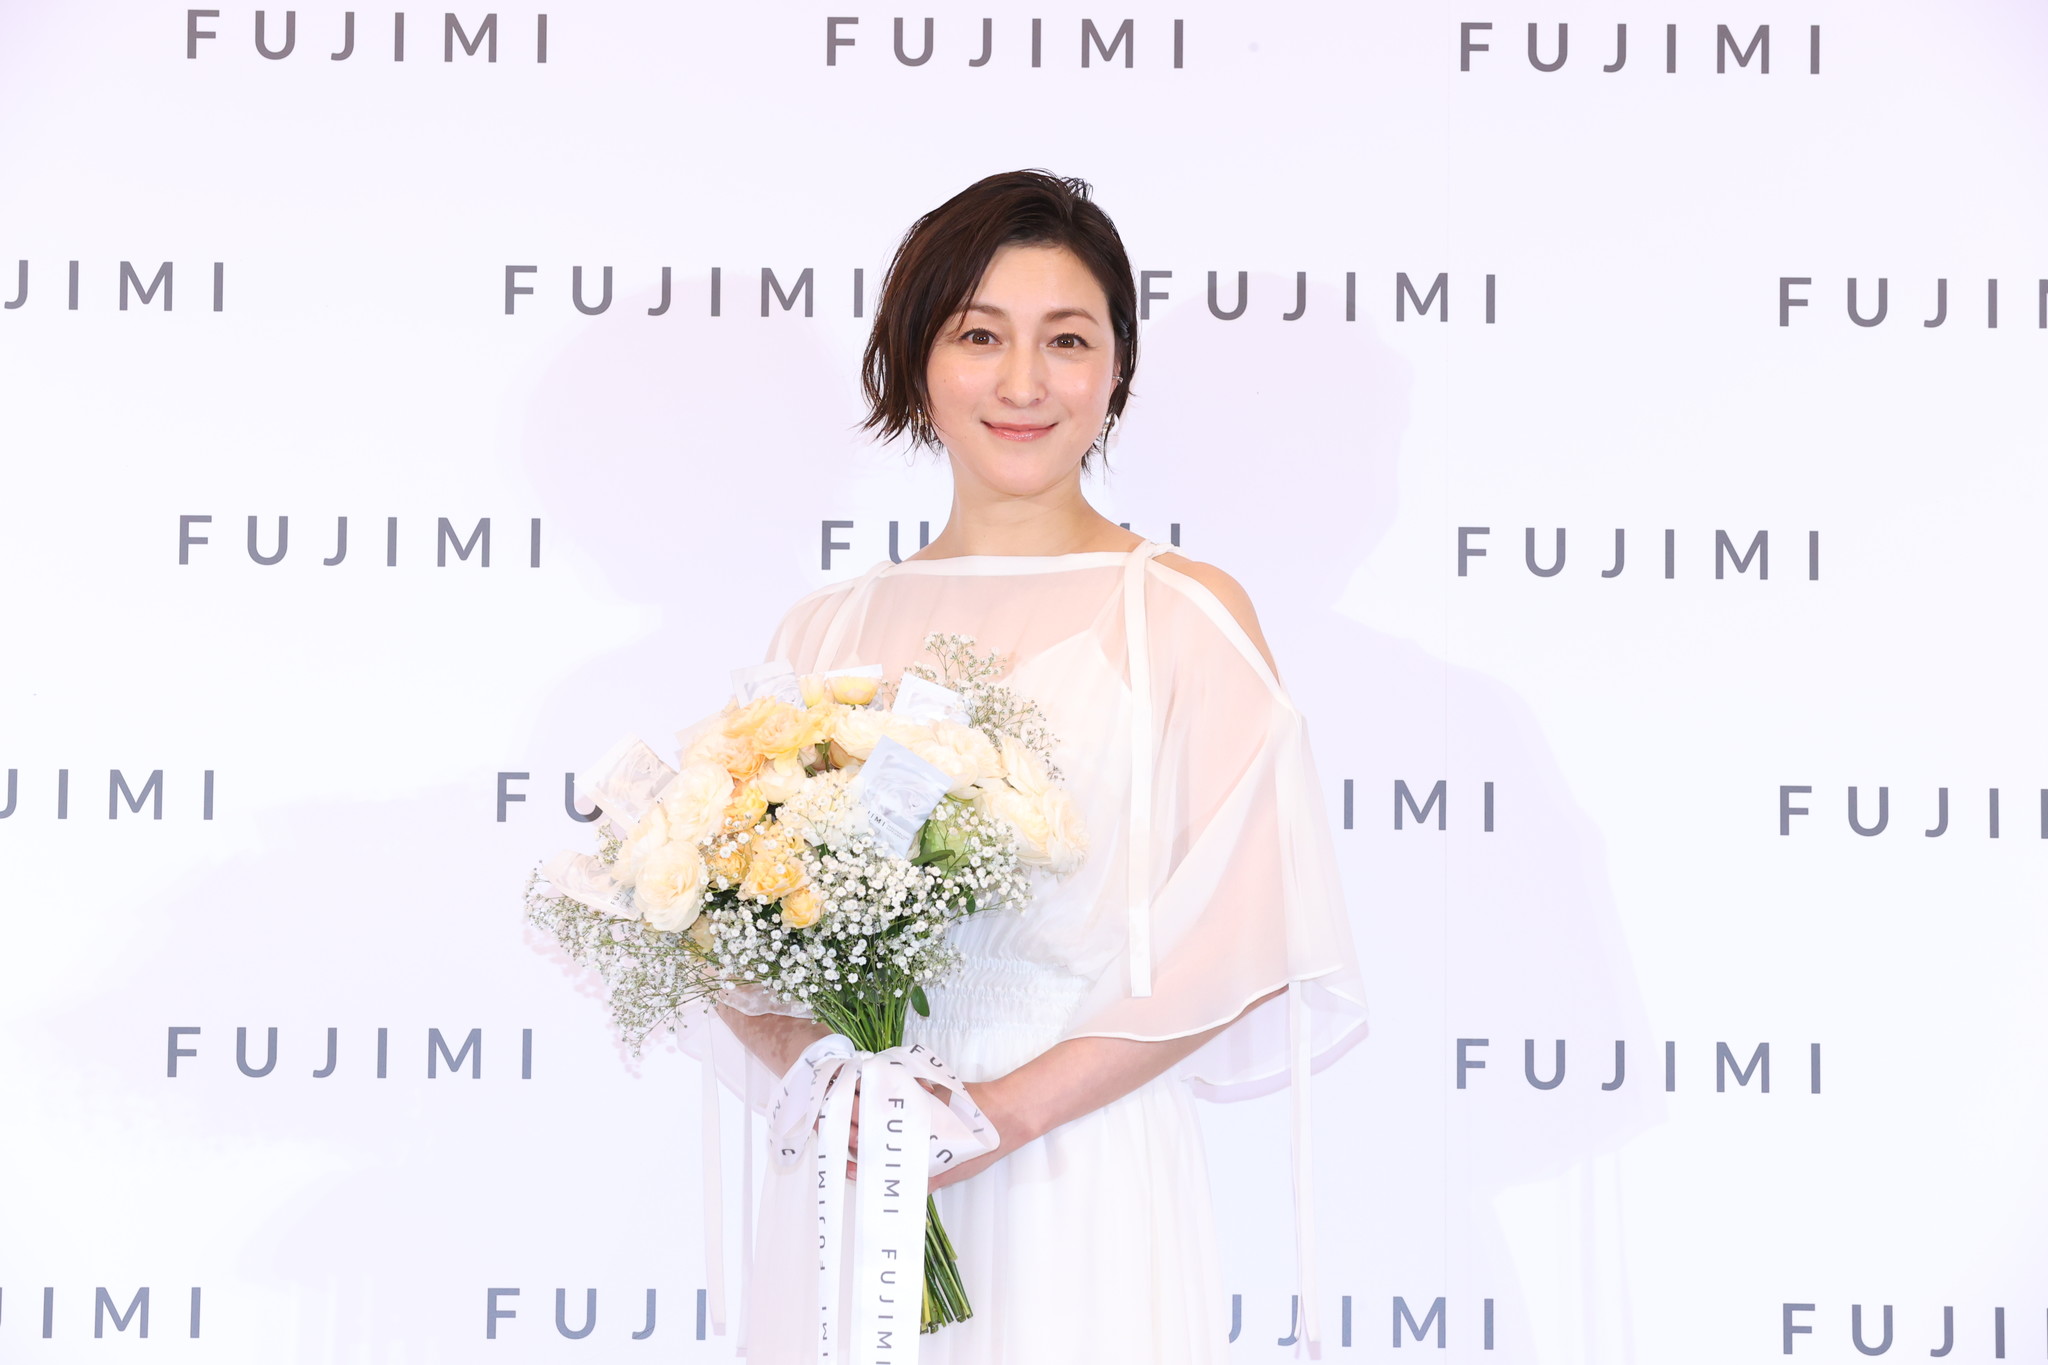 広末涼子 さん Fujimi パーソナライズサプリメントアンバサダーに就任 女優 主婦 母親どれも妥協できない毎日に安心感を与えてくれる トリコ株式会社のプレスリリース